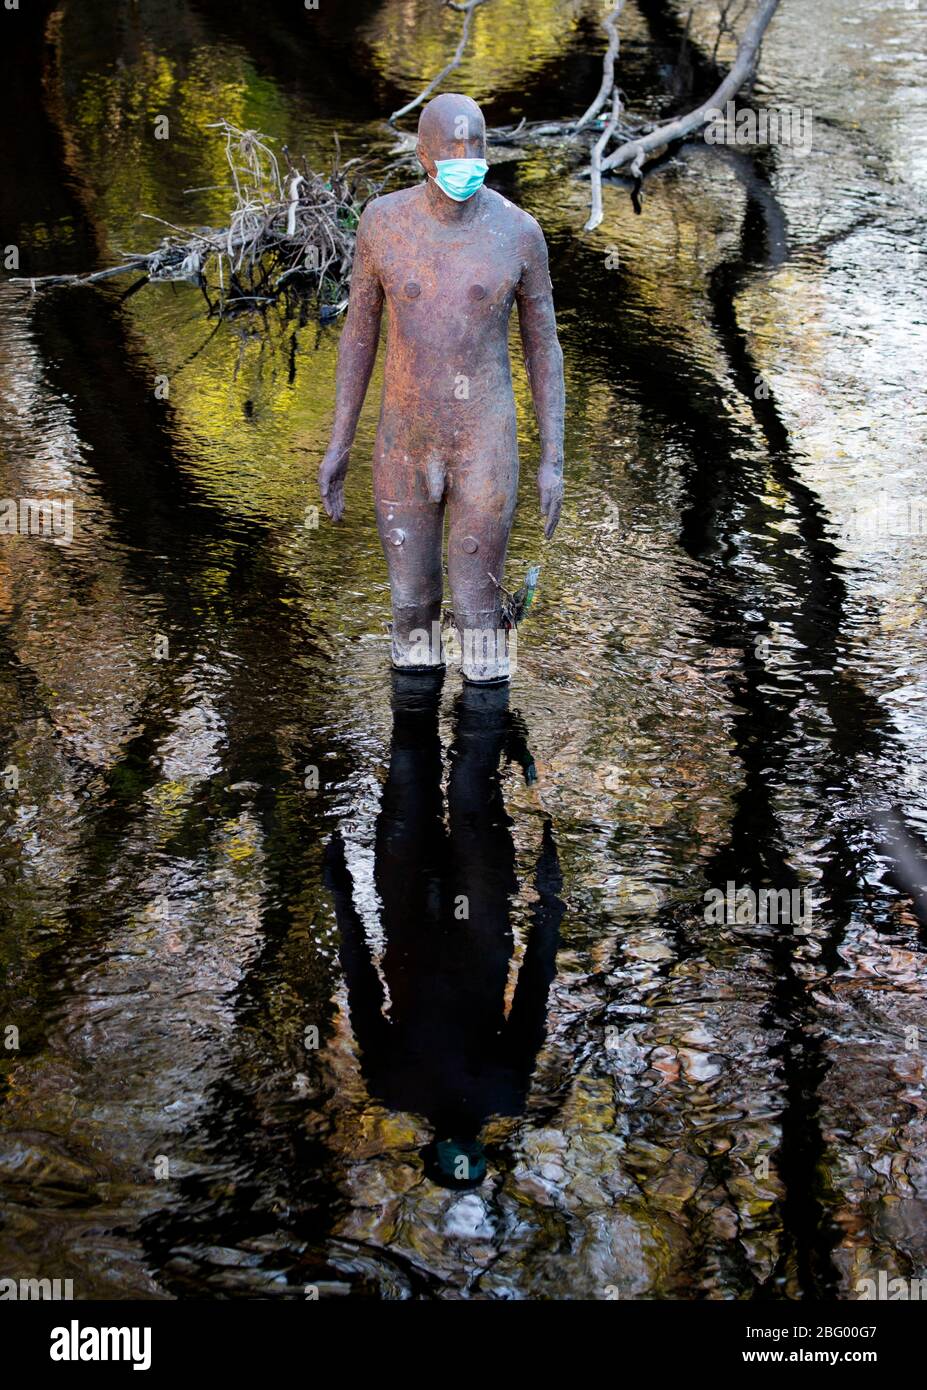 L'une des statues de l'artiste Antony Gormley « 6 FOIS » dans l'eau de Leith, à Édimbourg, porte un masque protecteur tandis que le Royaume-Uni continue à se maintenir pour aider à freiner la propagation du coronavirus. Banque D'Images